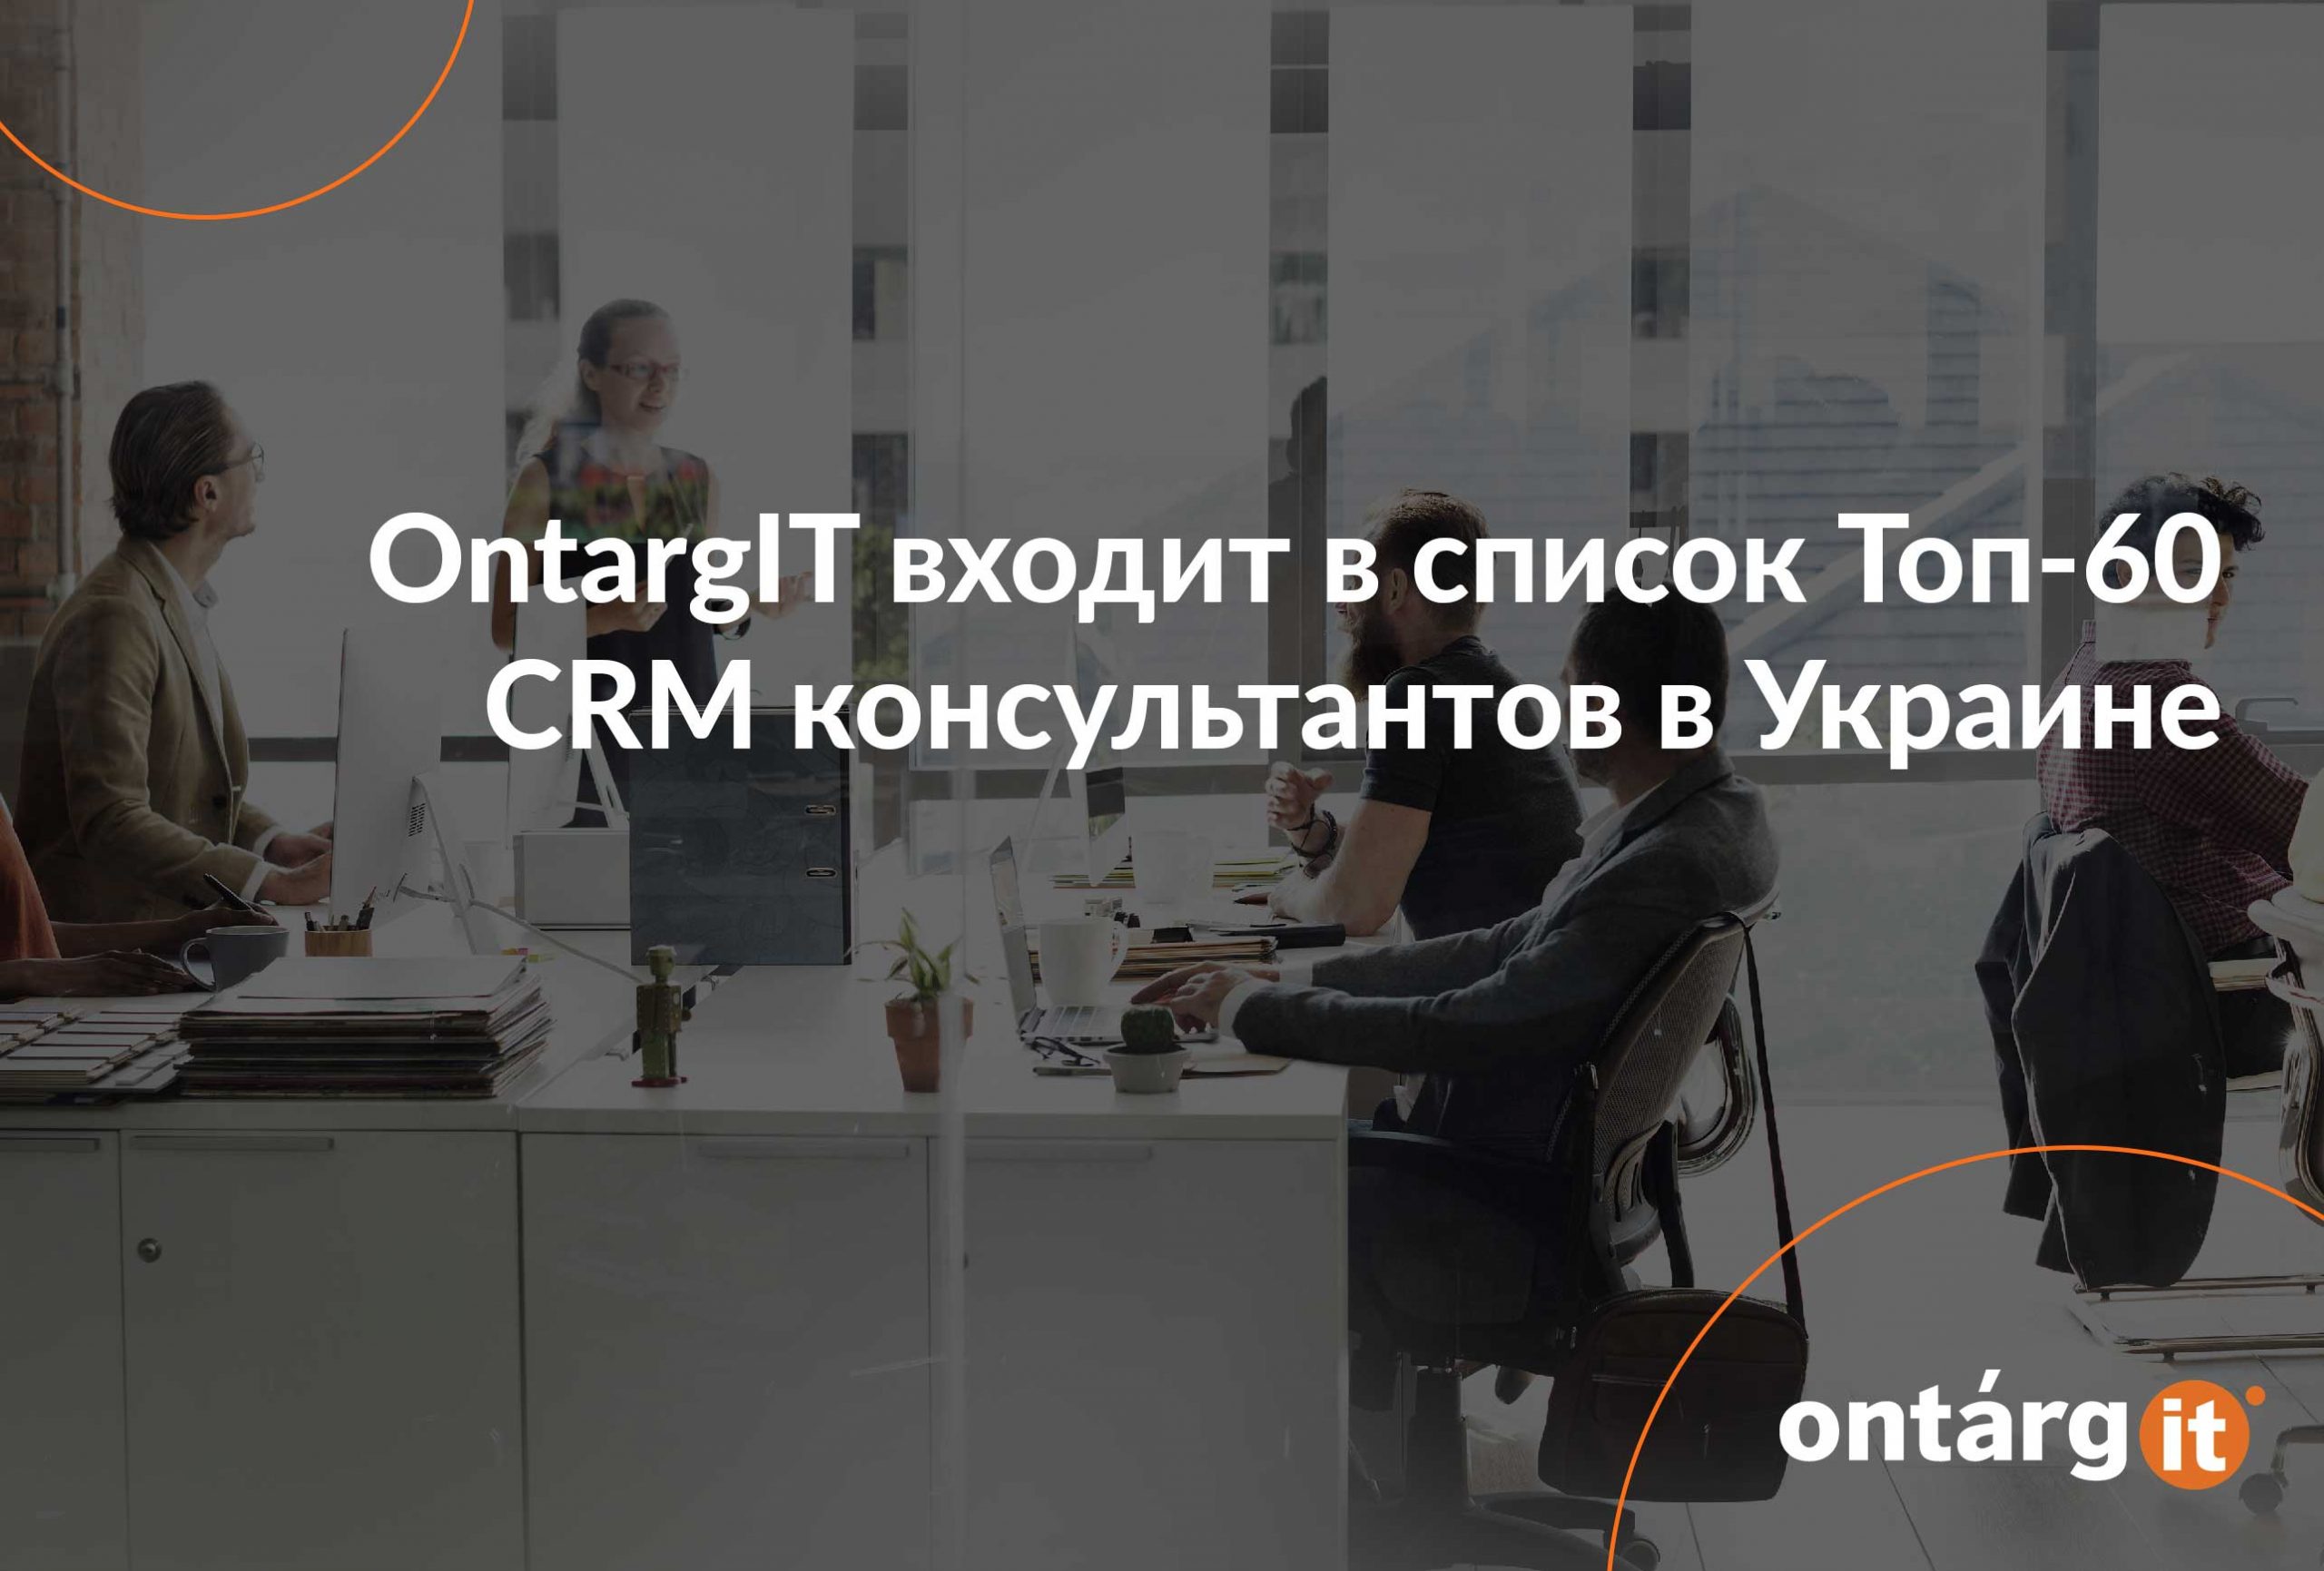 OntargIT-входит-в-список-Топ-60-CRM-консультантов-в-Украине